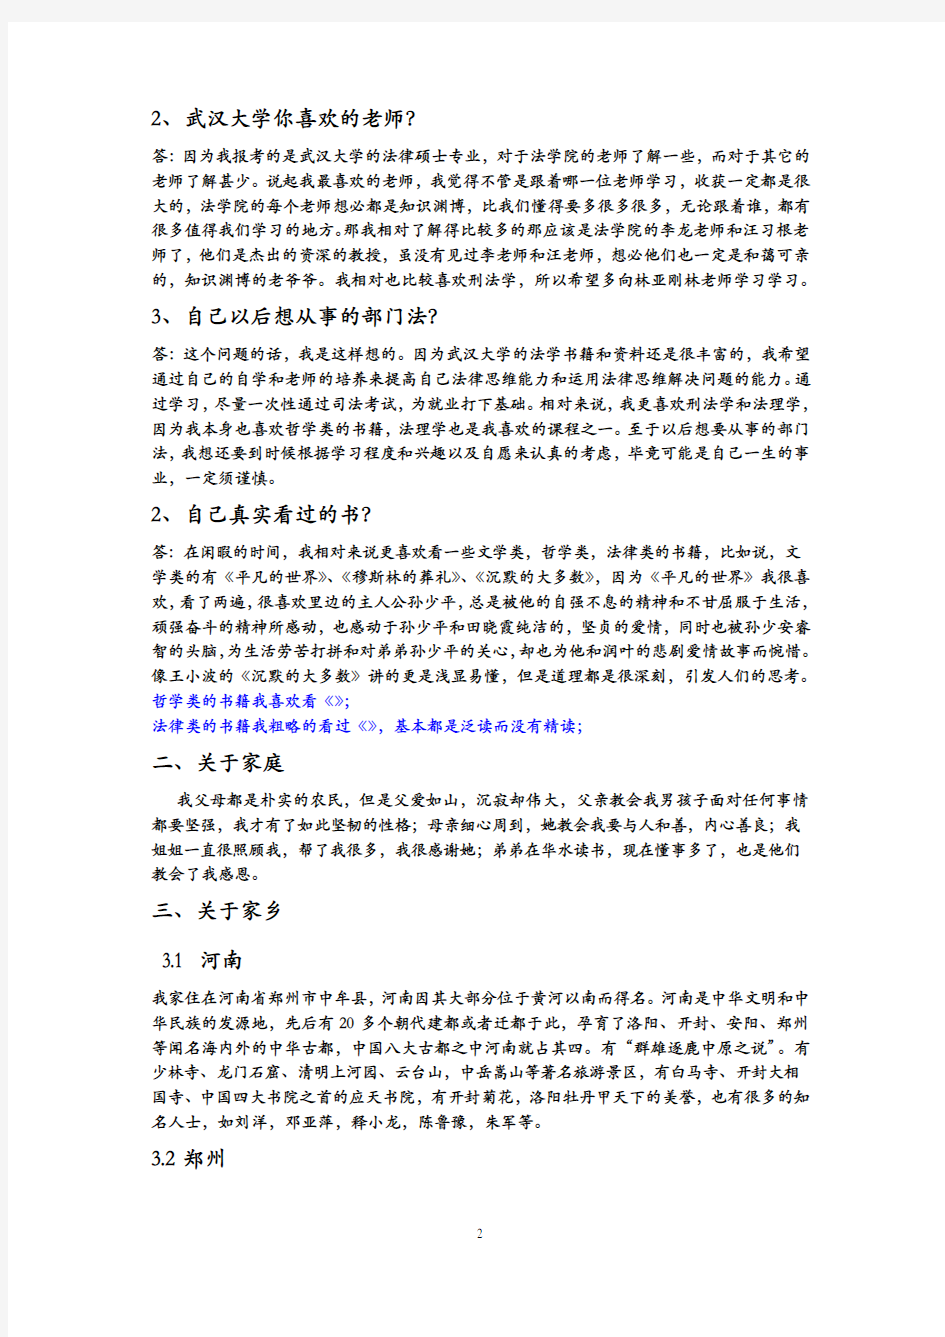 考研自我介绍的中文版教学文案